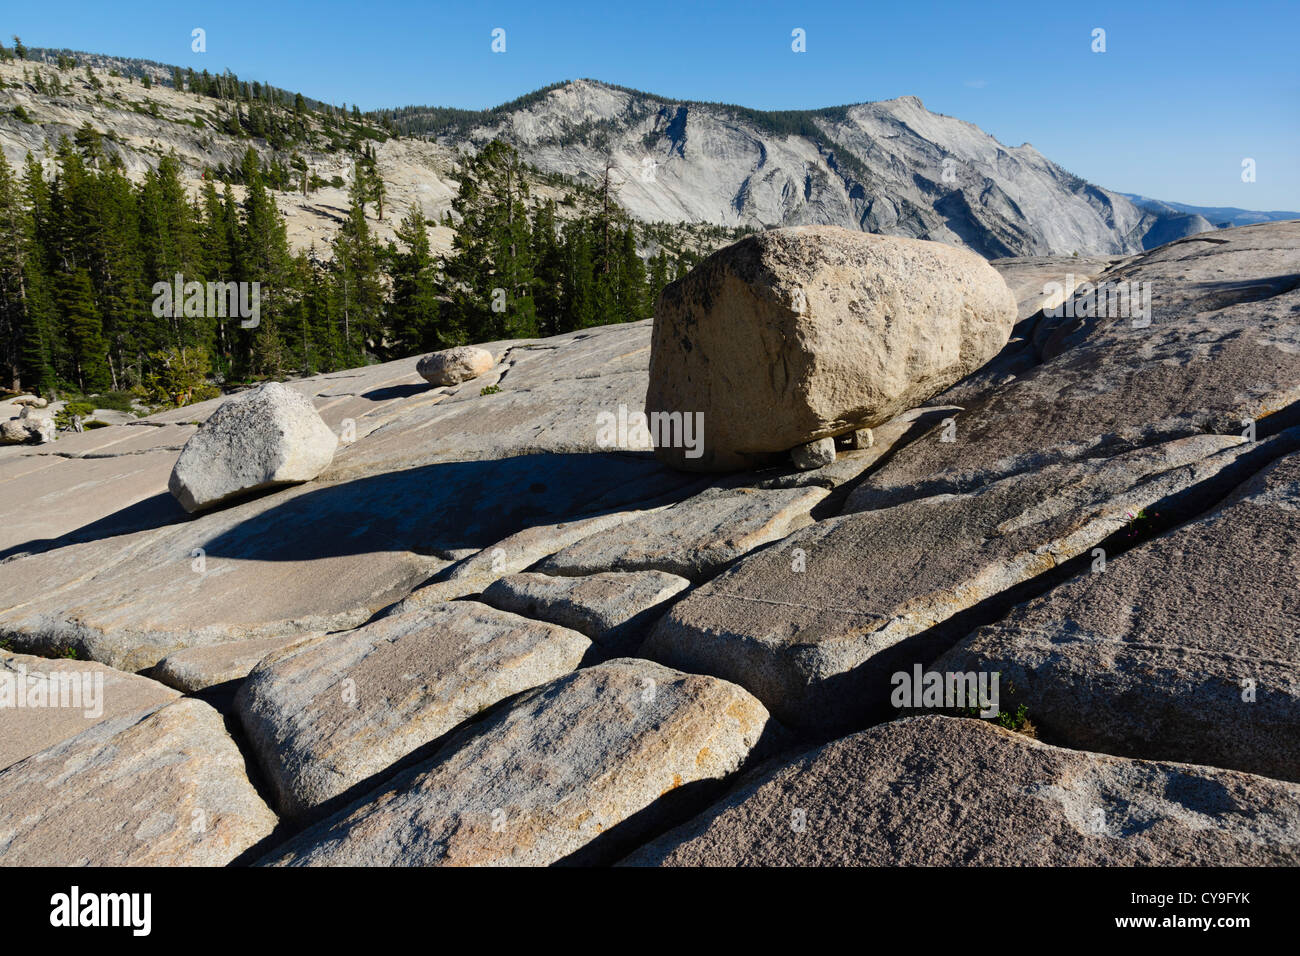 Yosemite, Route 120 - Olmstead Punkt. Findlinge, die durch Gletscher Action und Grykes in den Felsen gestrandet. Stockfoto